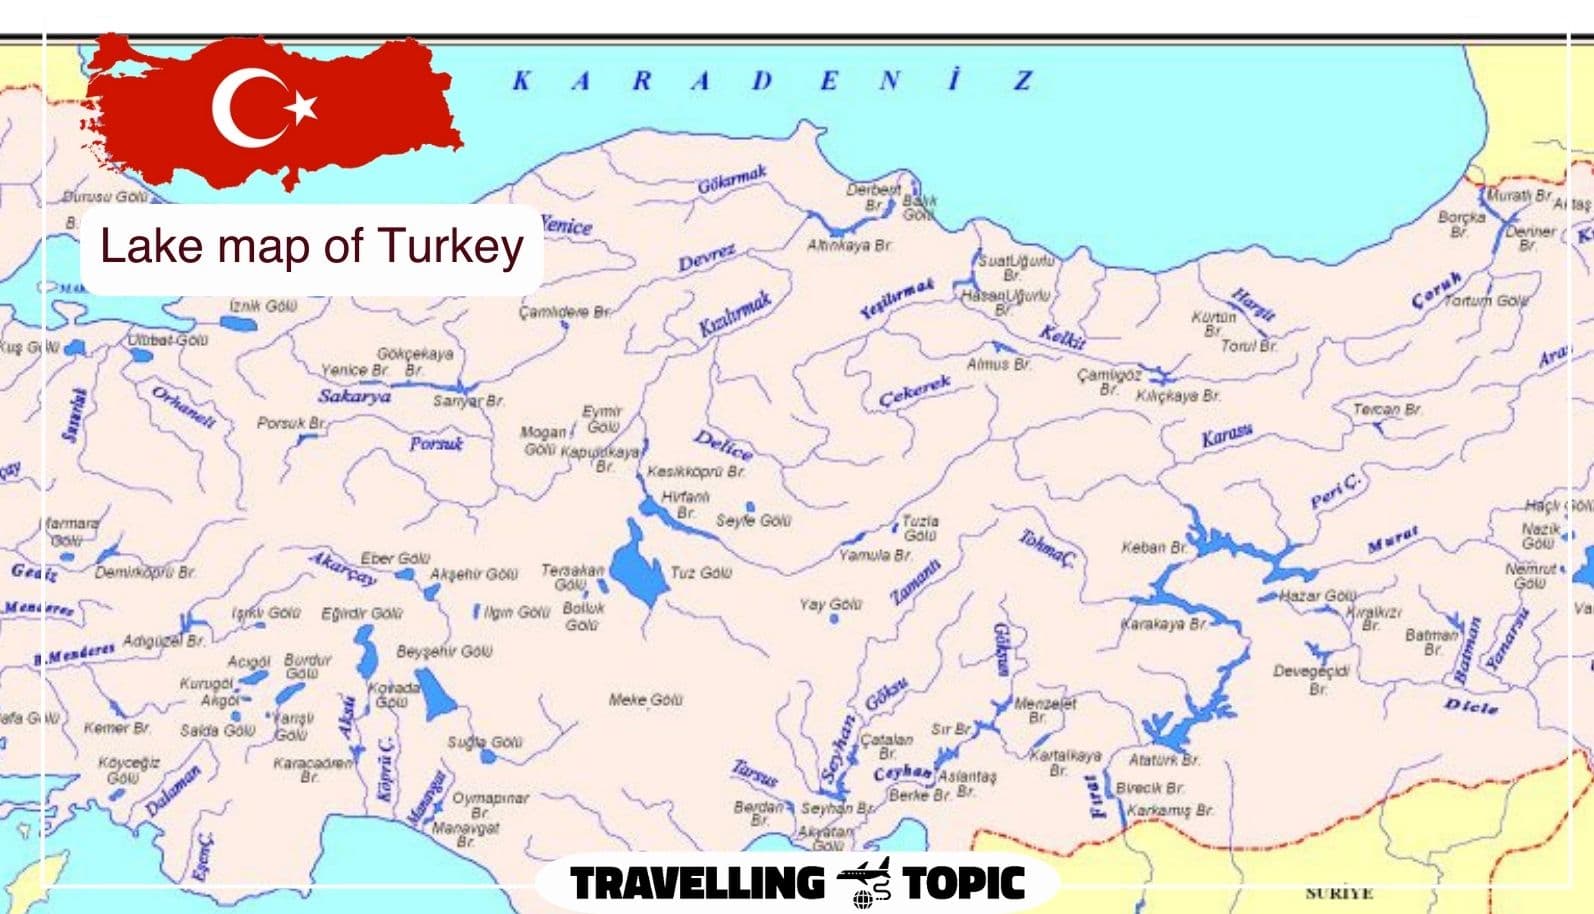 Lake map of Turkey